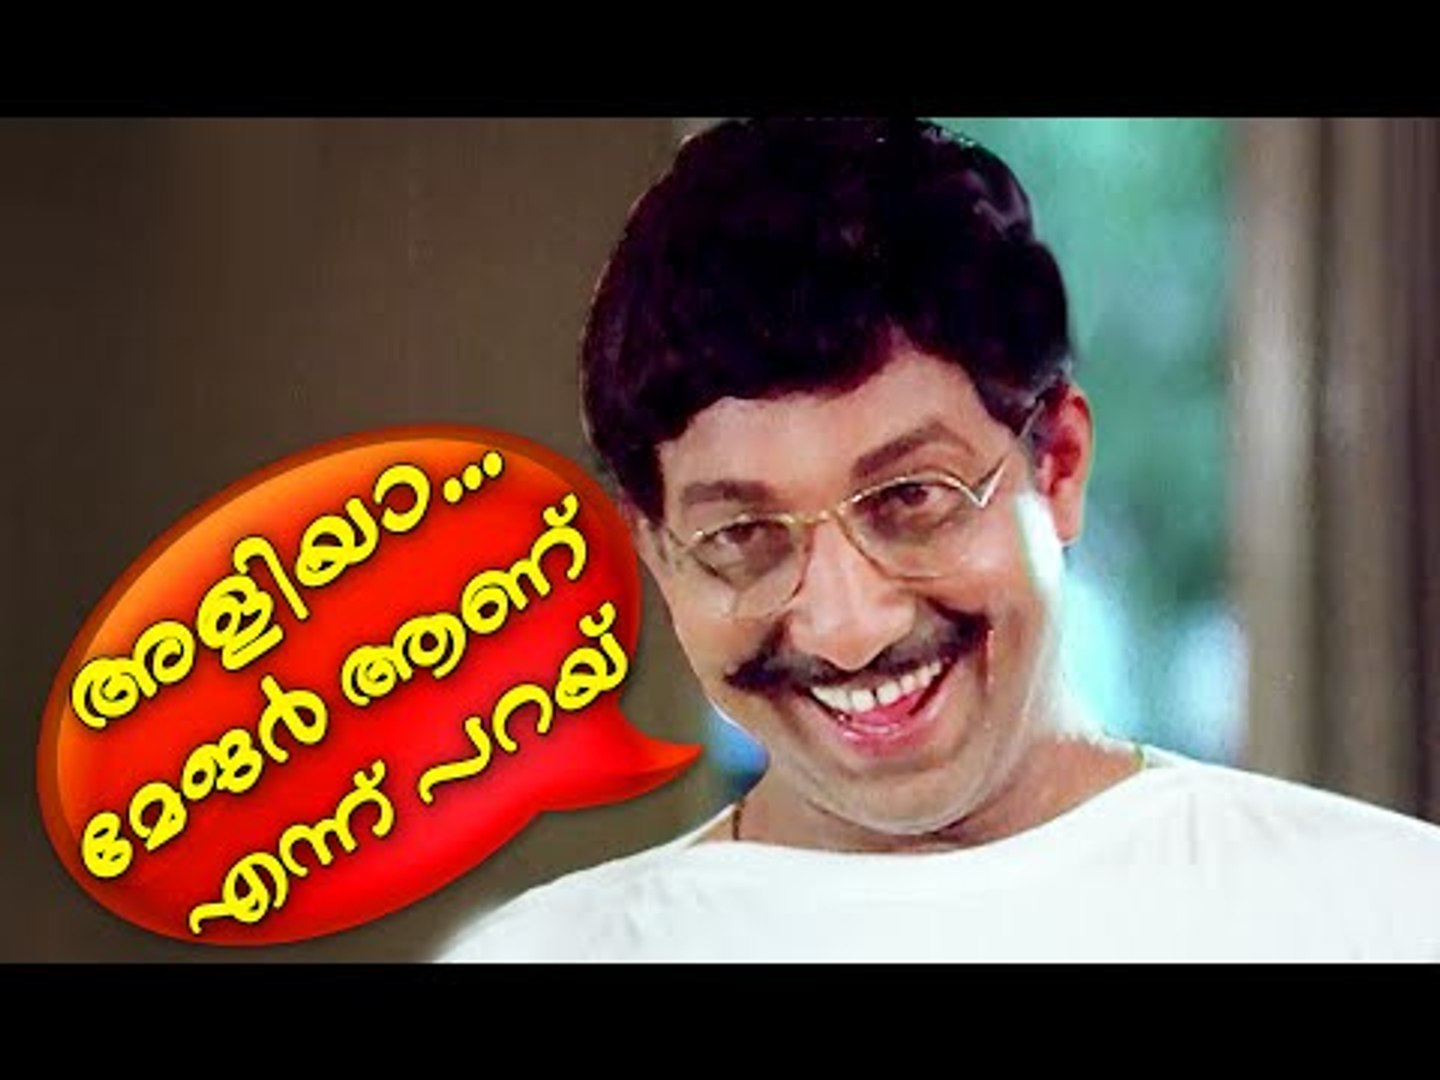 അളിയാ...| Malayalam Comedy Scenes | Malayalam Comedy Movies |Odaruthammava Aalariyam Climax Comedy